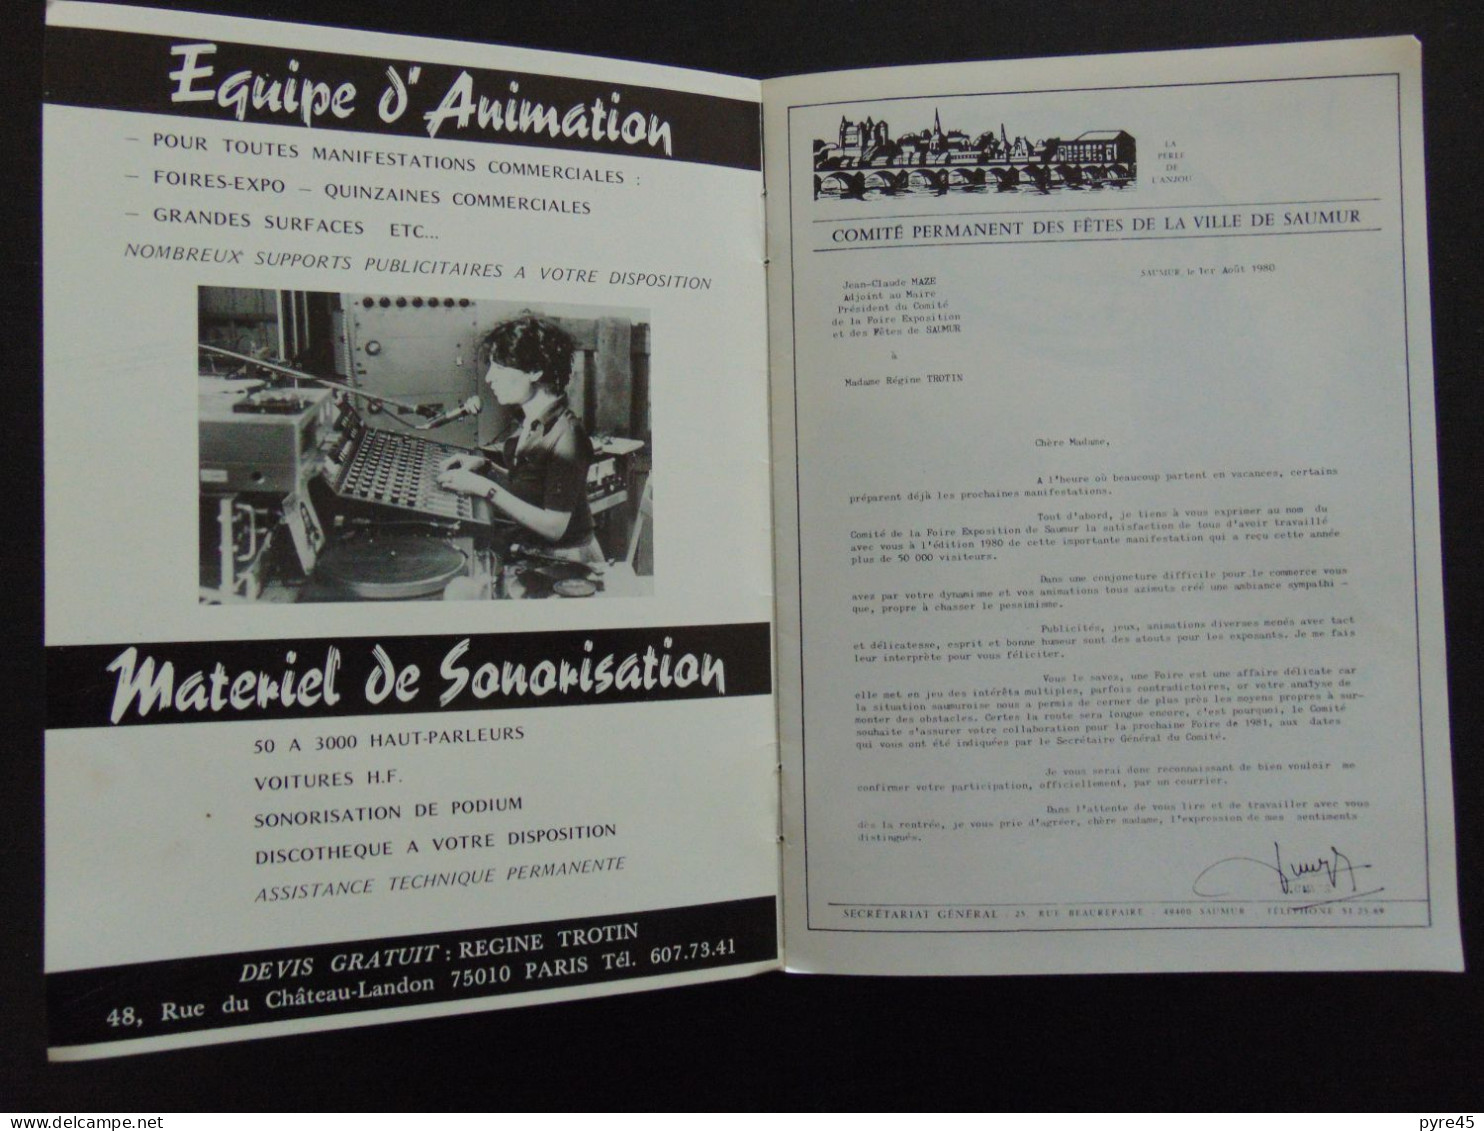 PUBLICITAIRE REGINE TROTIN ANIMATION PARIS 1980 - Advertising